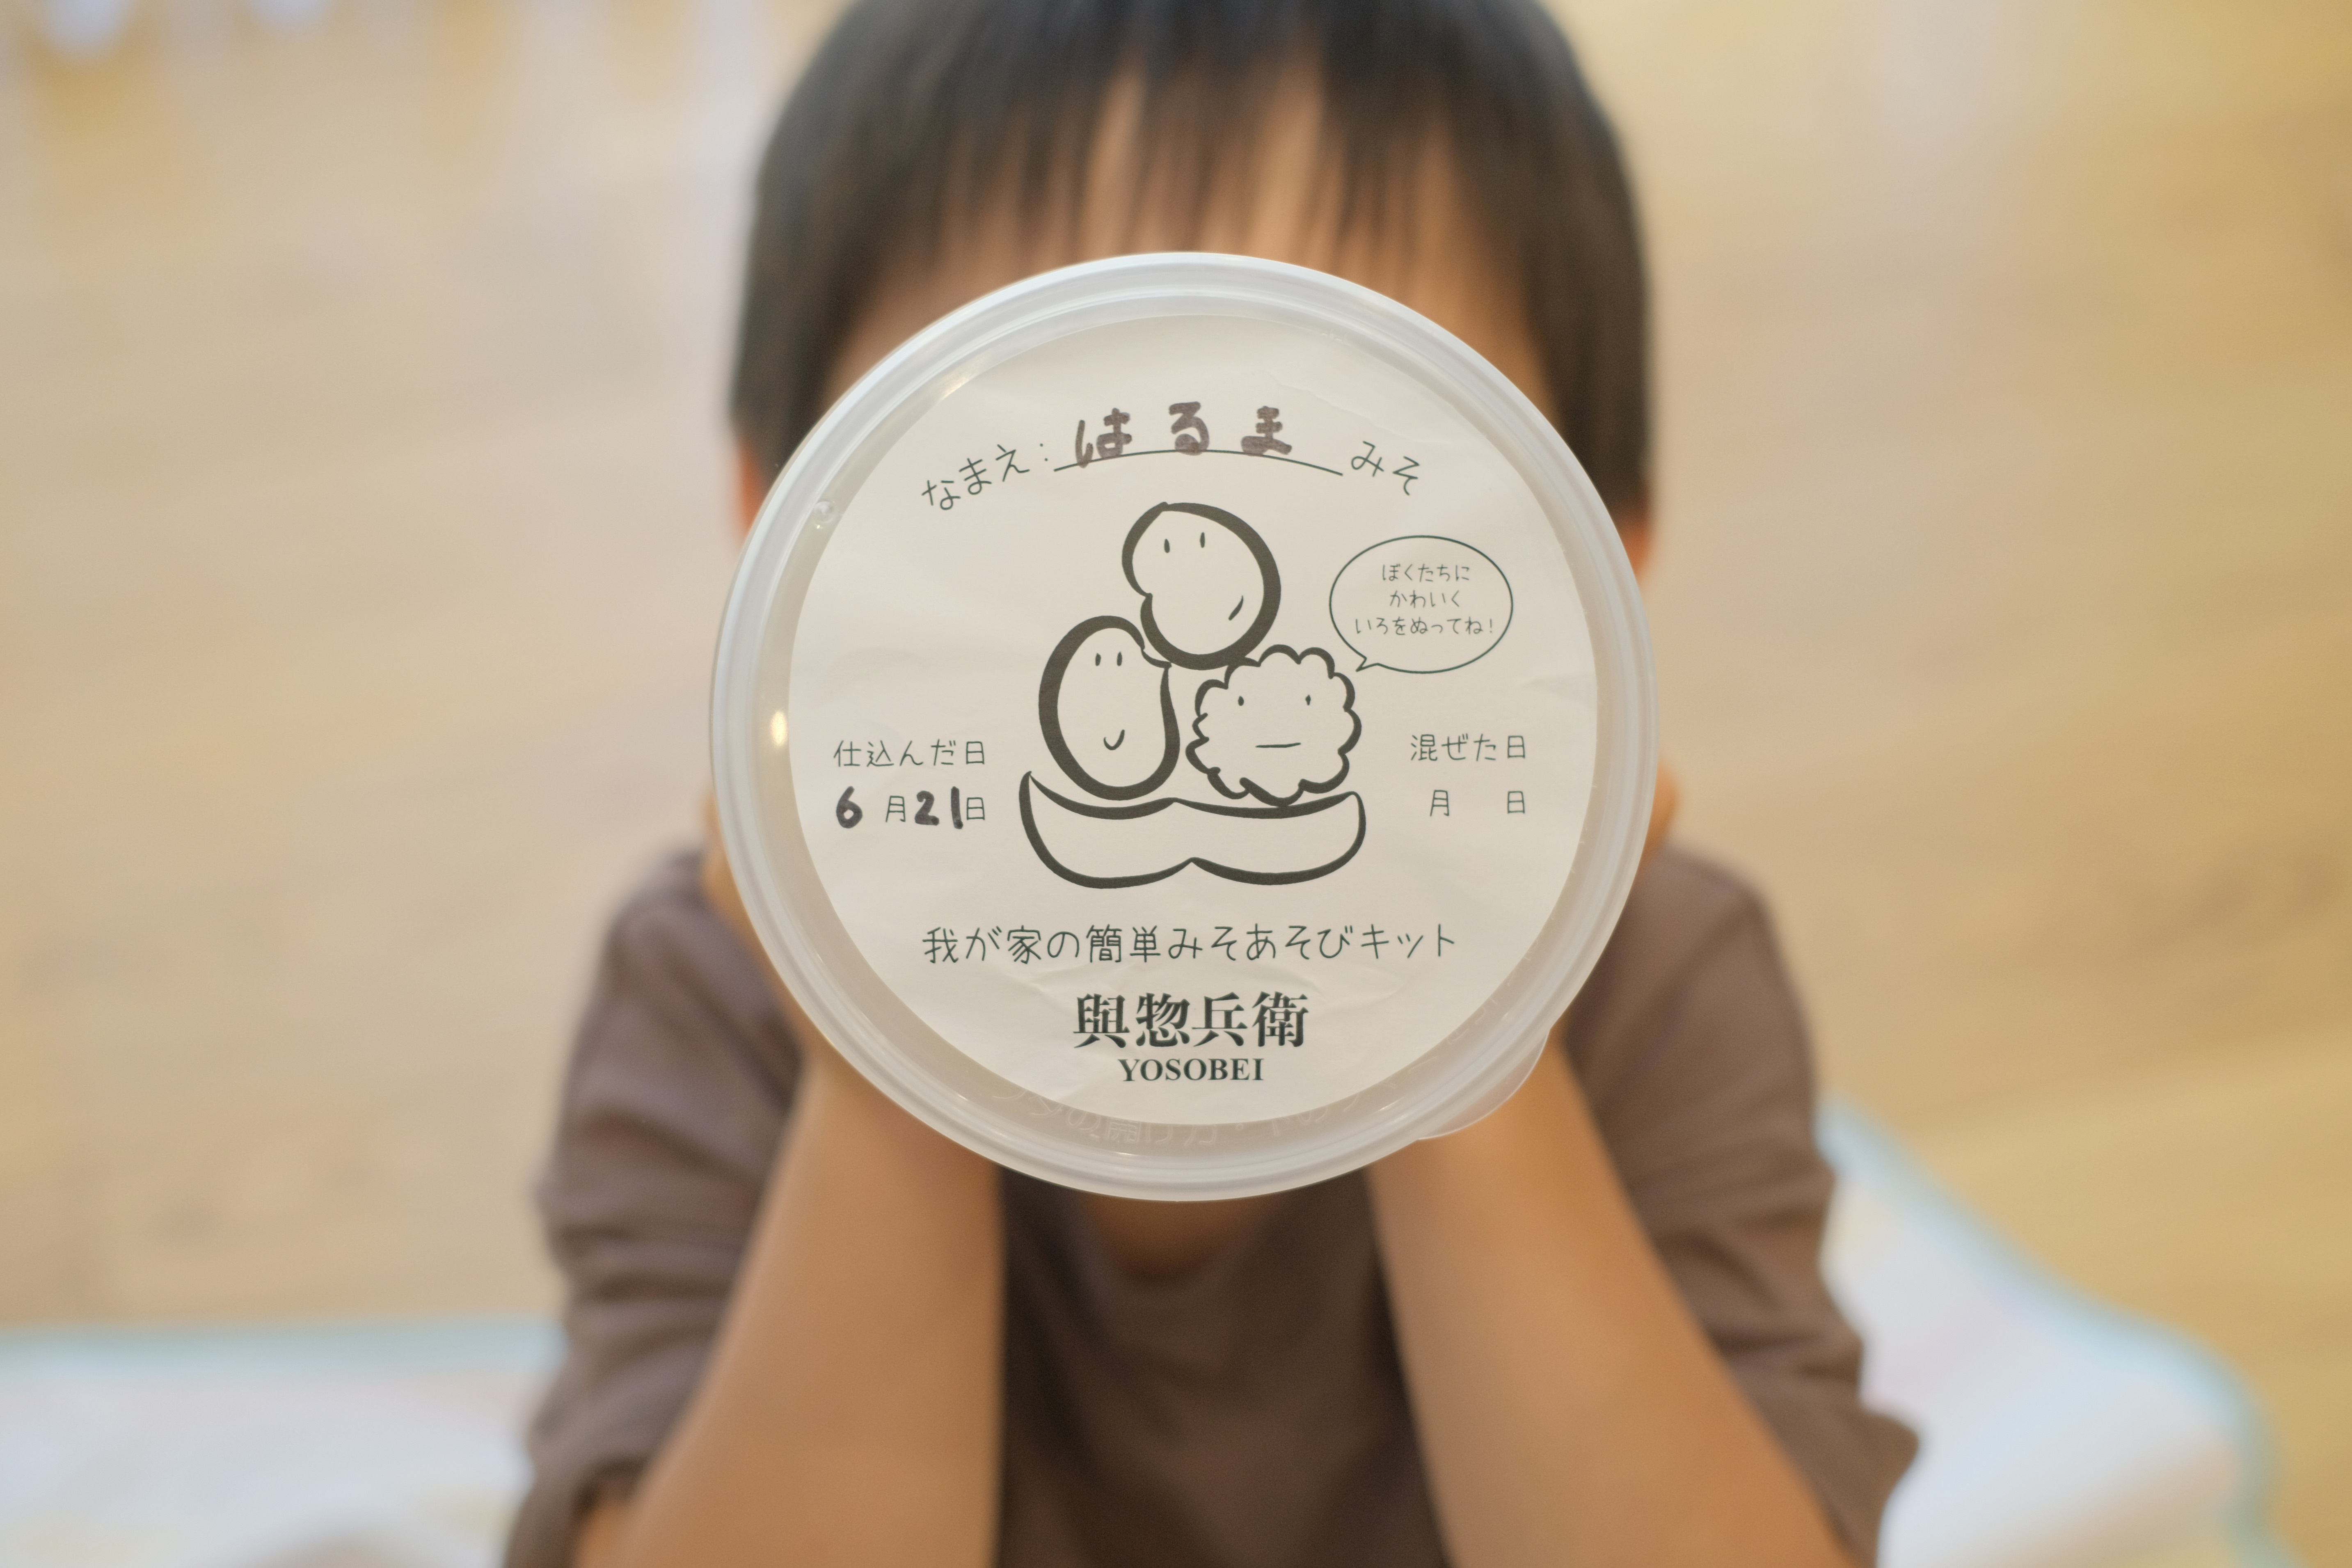 日経トレンディに掲載!3歳でも味噌が仕込める「みそあそびキット」 みそキット800g